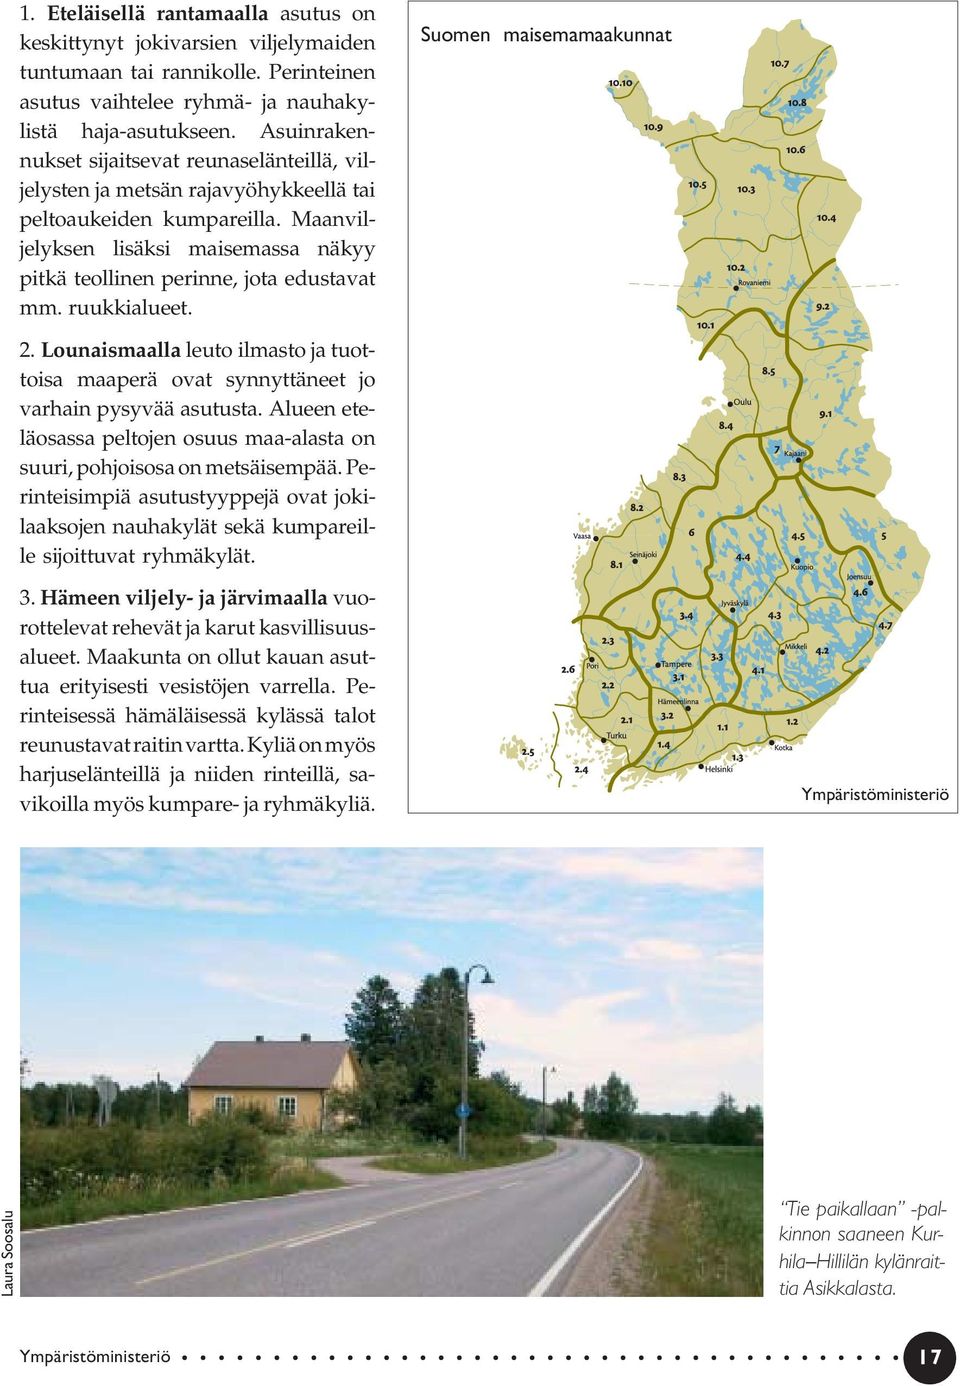 Maanviljelyksen lisäksi maisemassa näkyy pitkä teollinen perinne, jota edustavat mm. ruukkialueet. Suomen maisemamaakunnat 2.